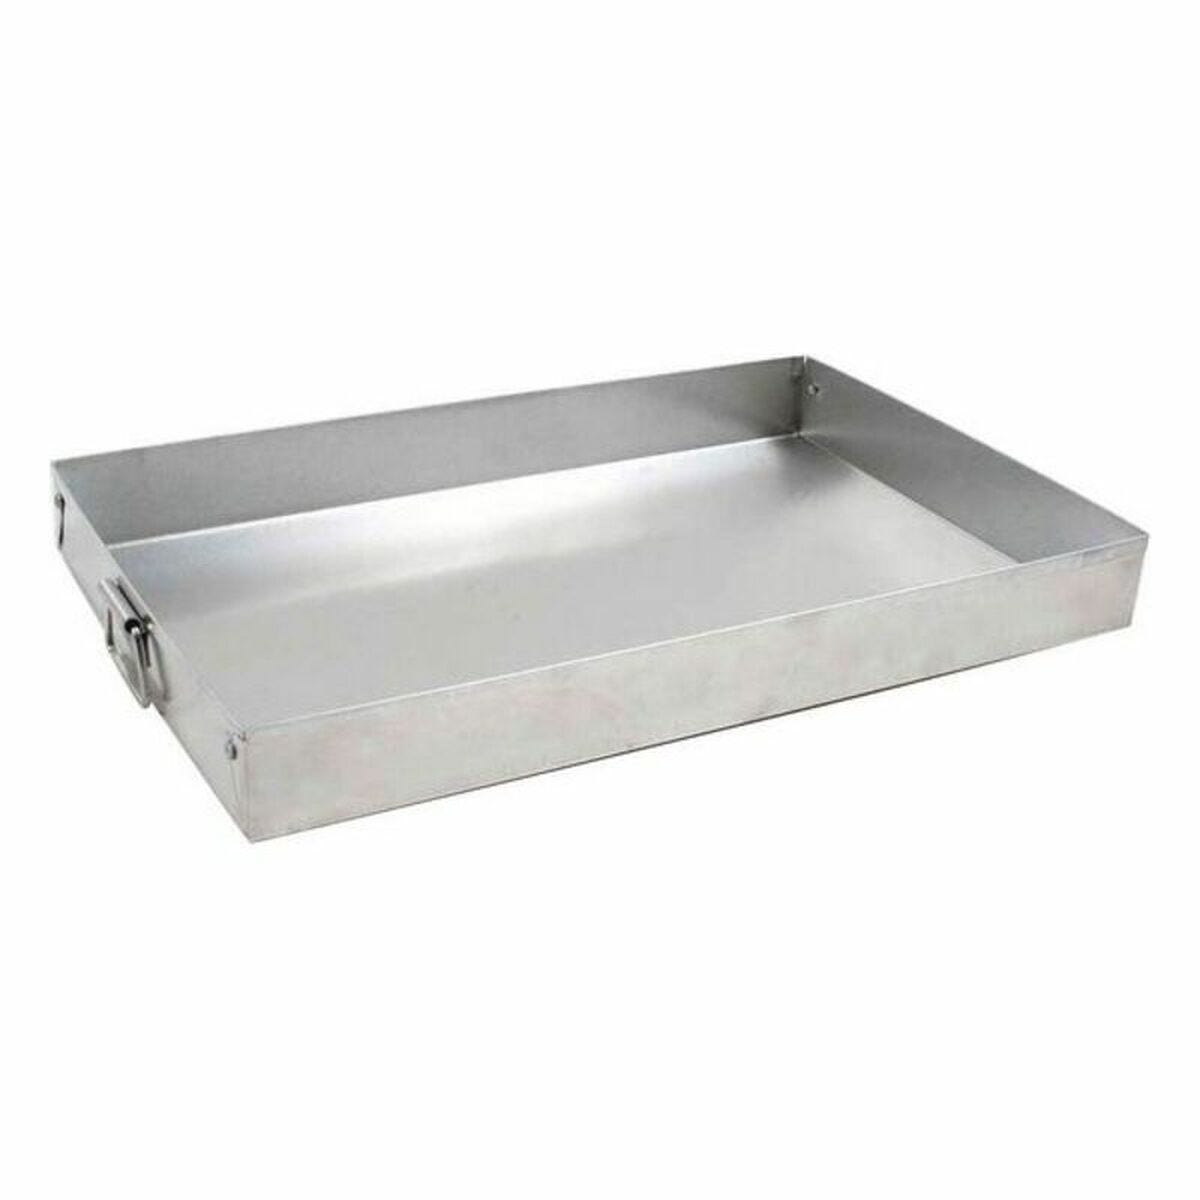 Molde para horno / tostador de aluminio con tapa, 12-7 / 8x9-3 / 4x2-3 / 8